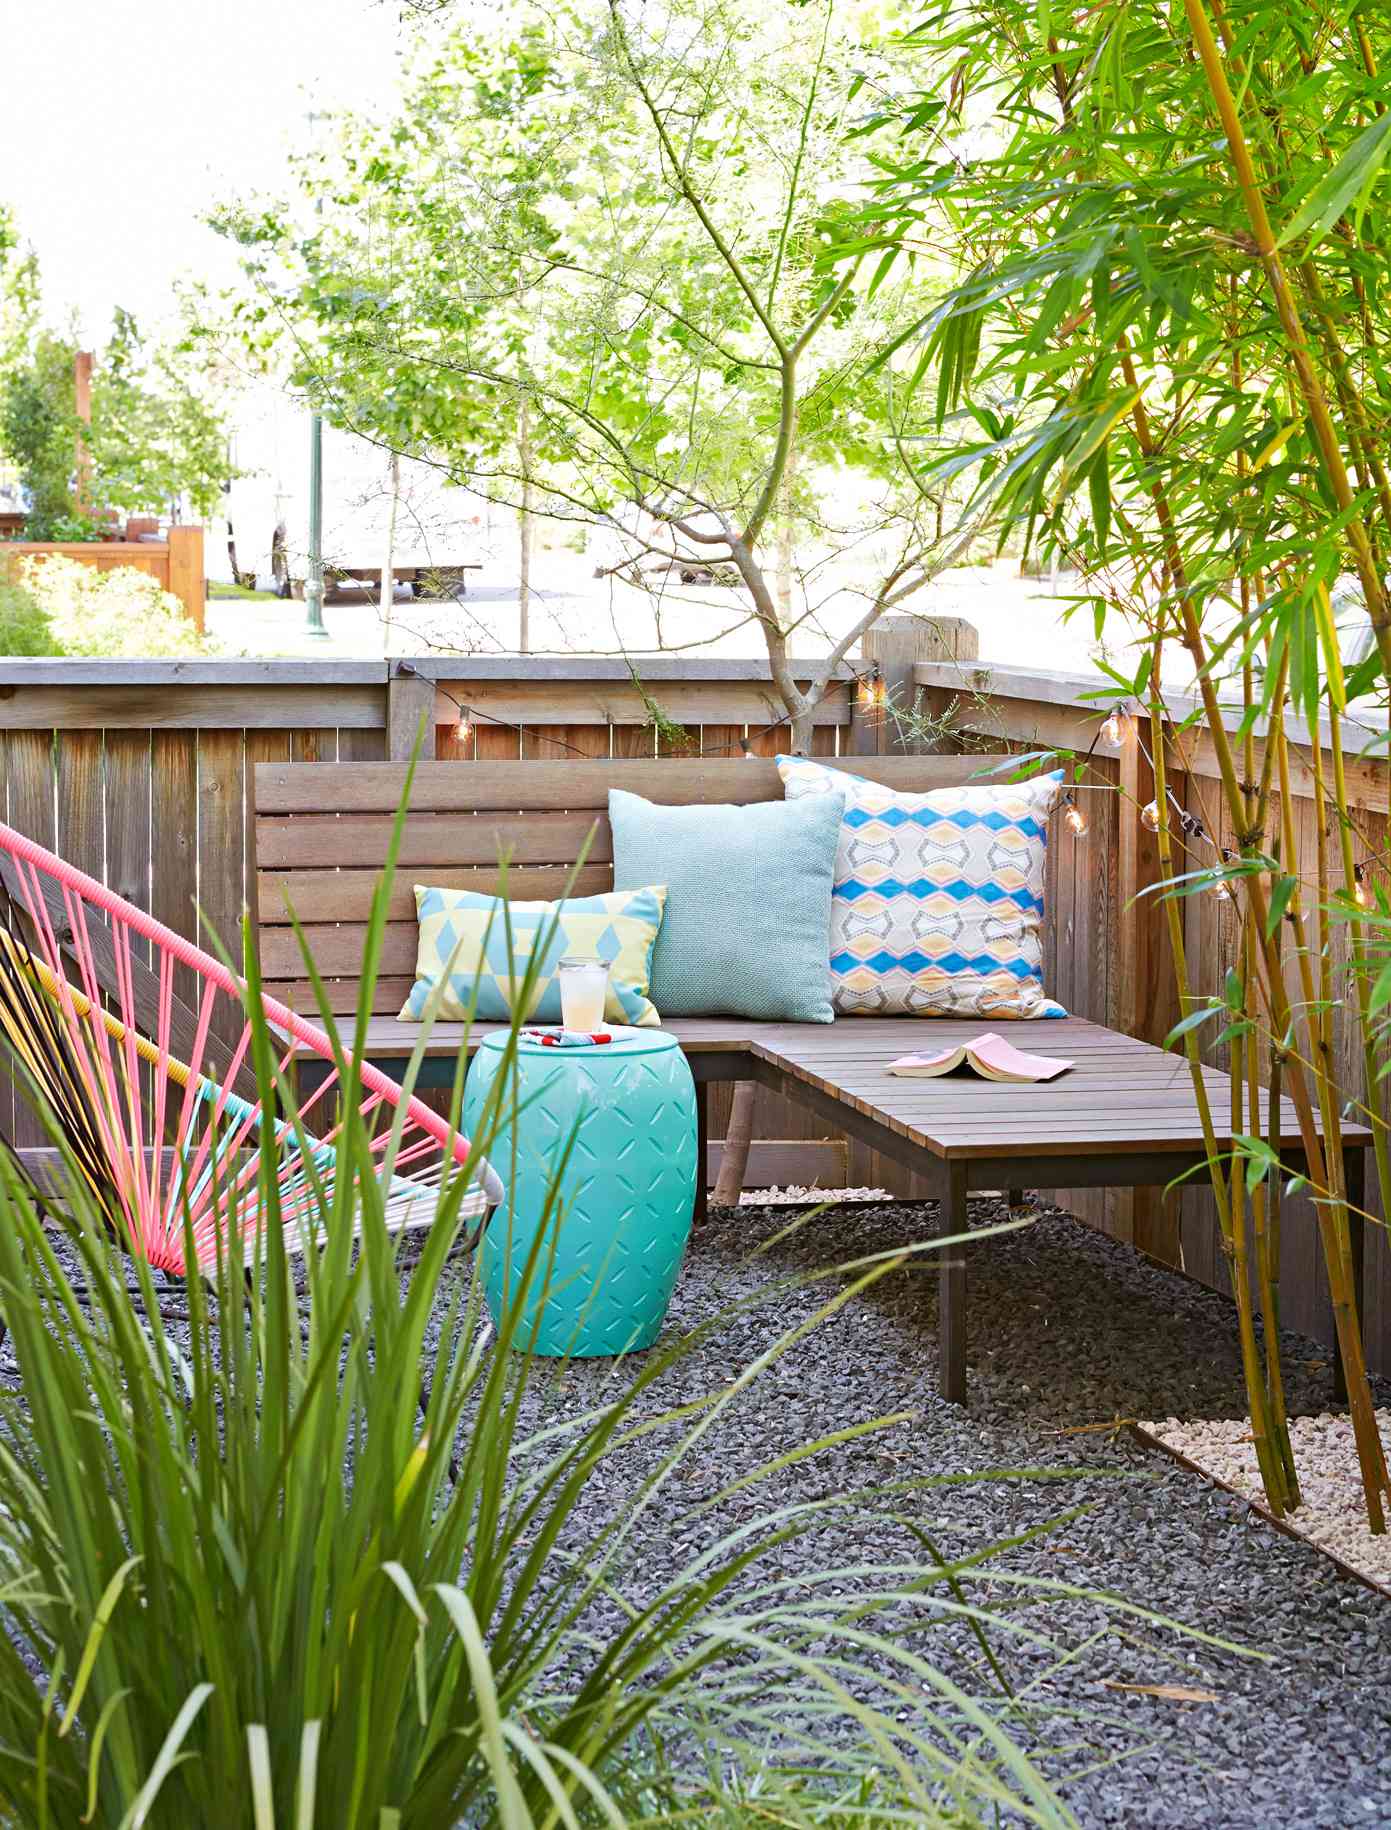 Cheap Backyard Ideas | Better Homes & Gardens